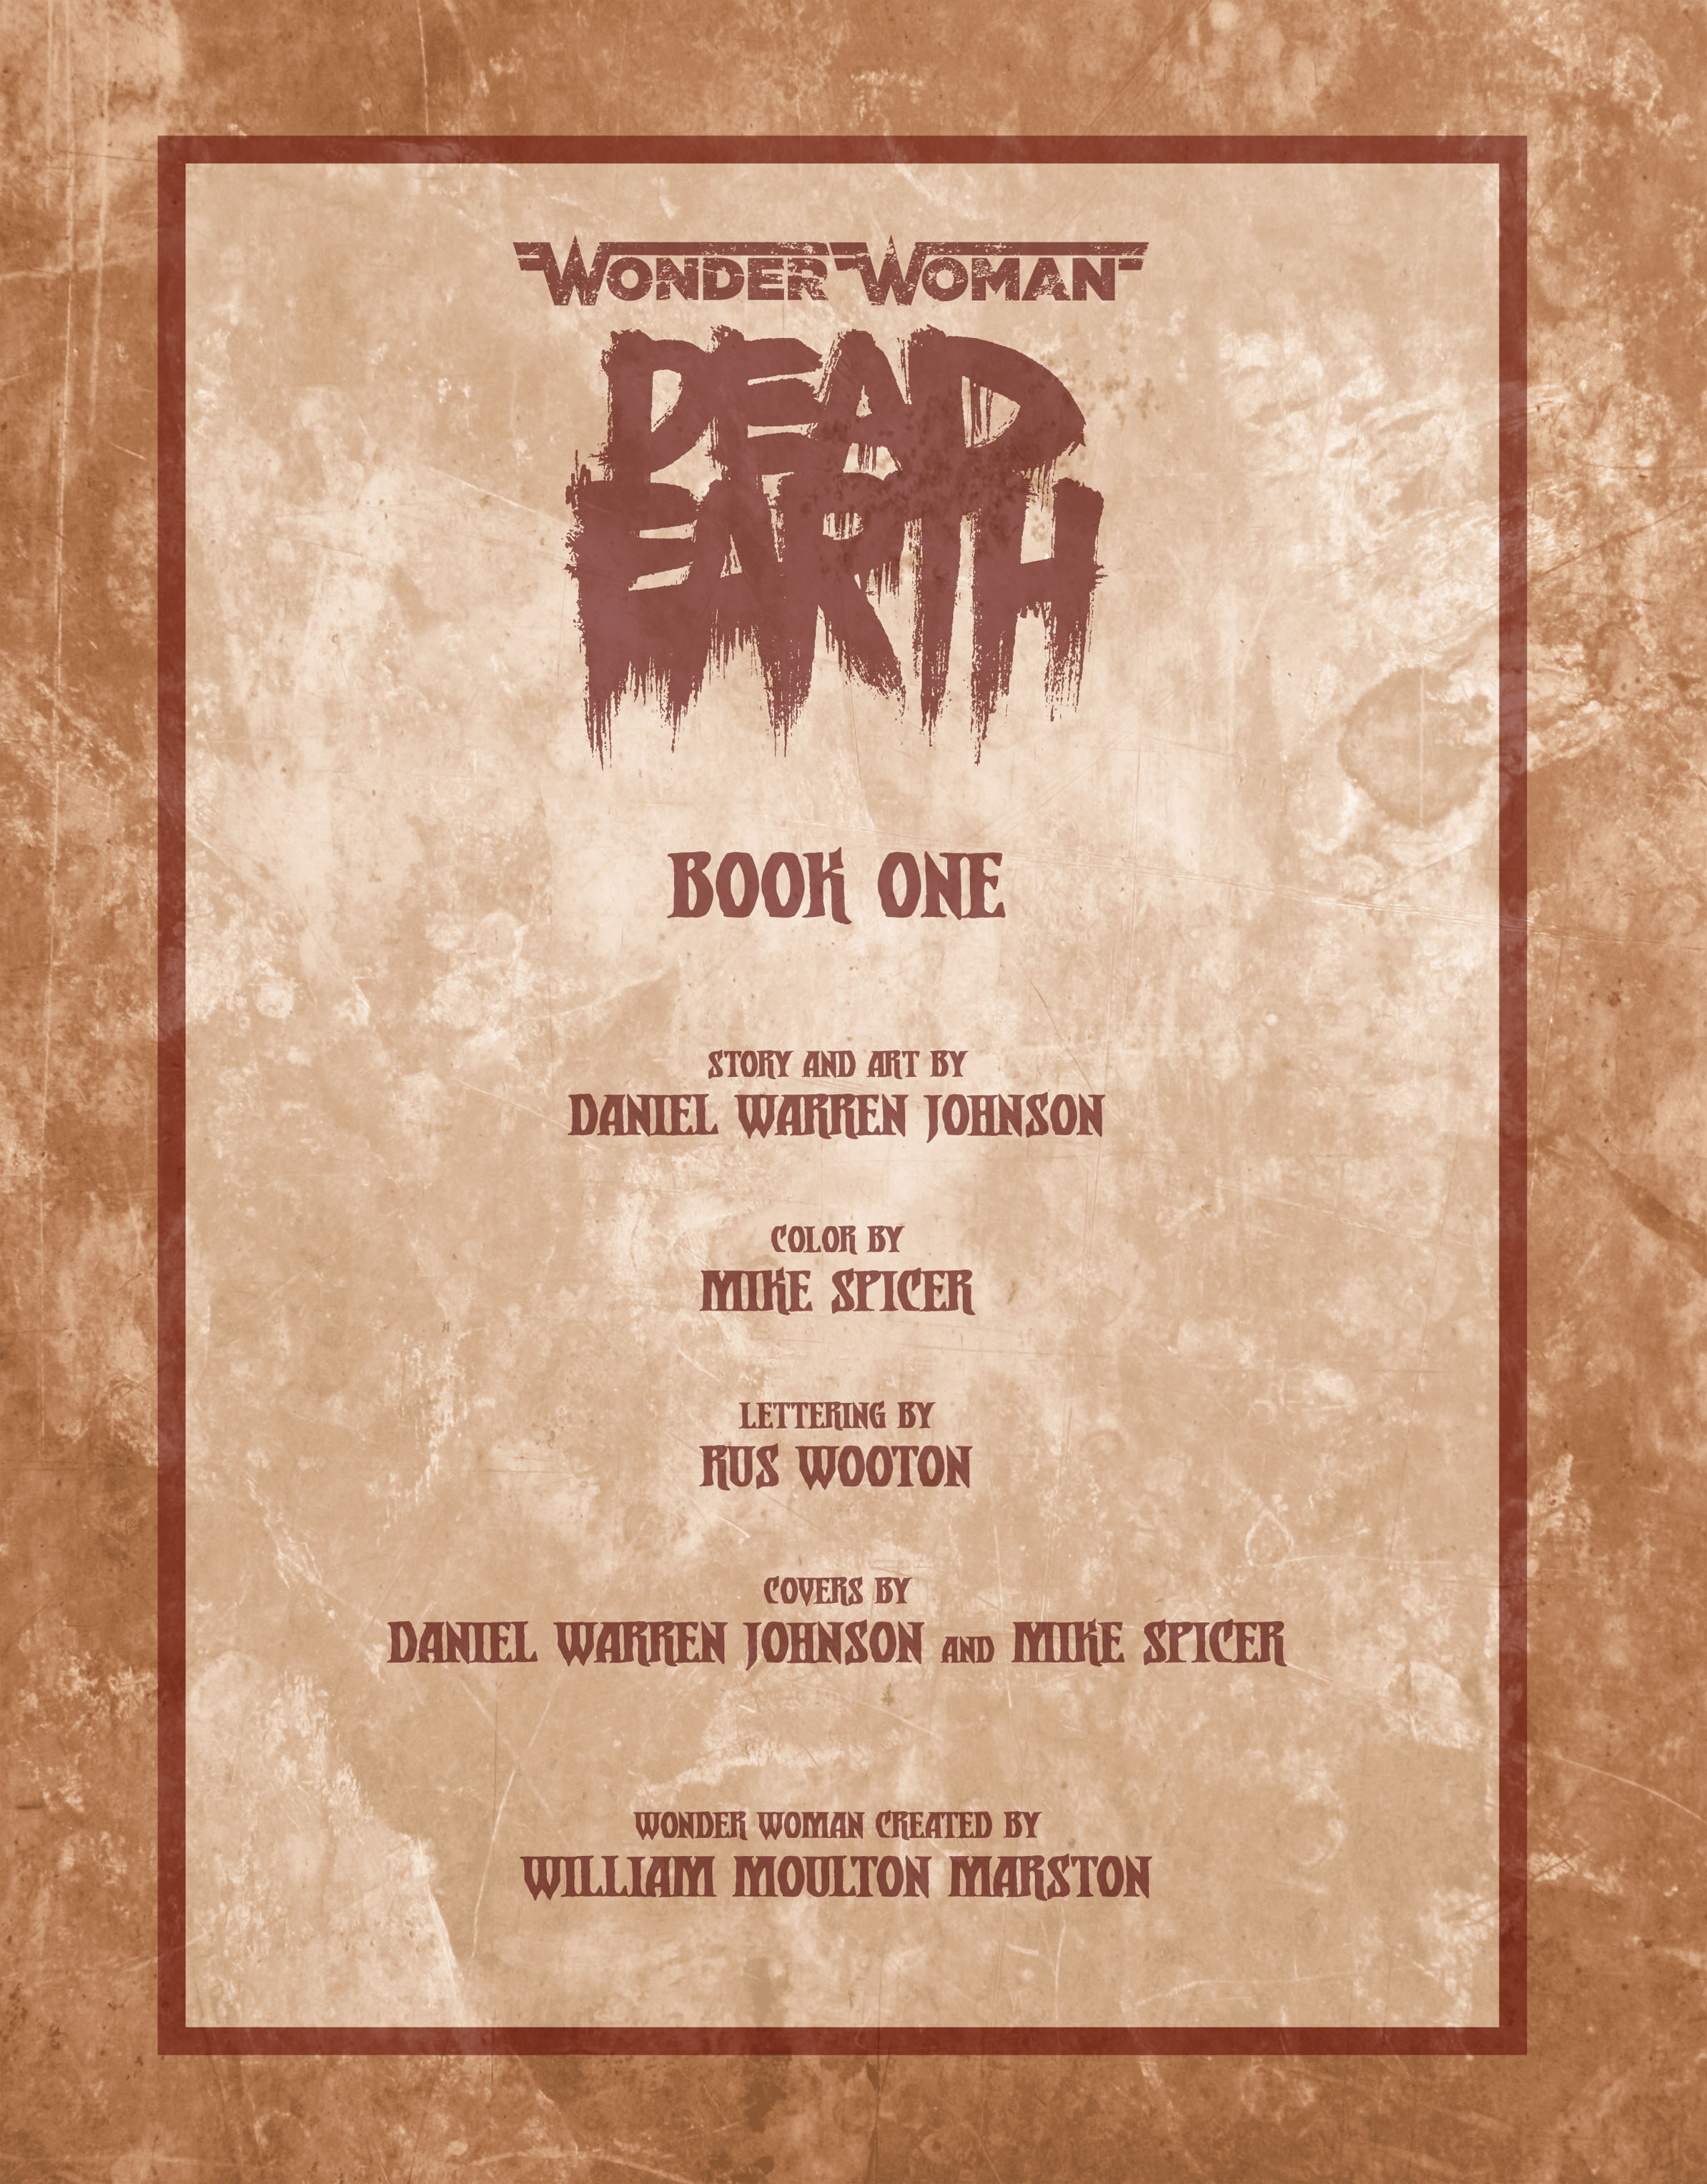 Read online Wonder Woman: Dead Earth comic -  Issue #1 - 2